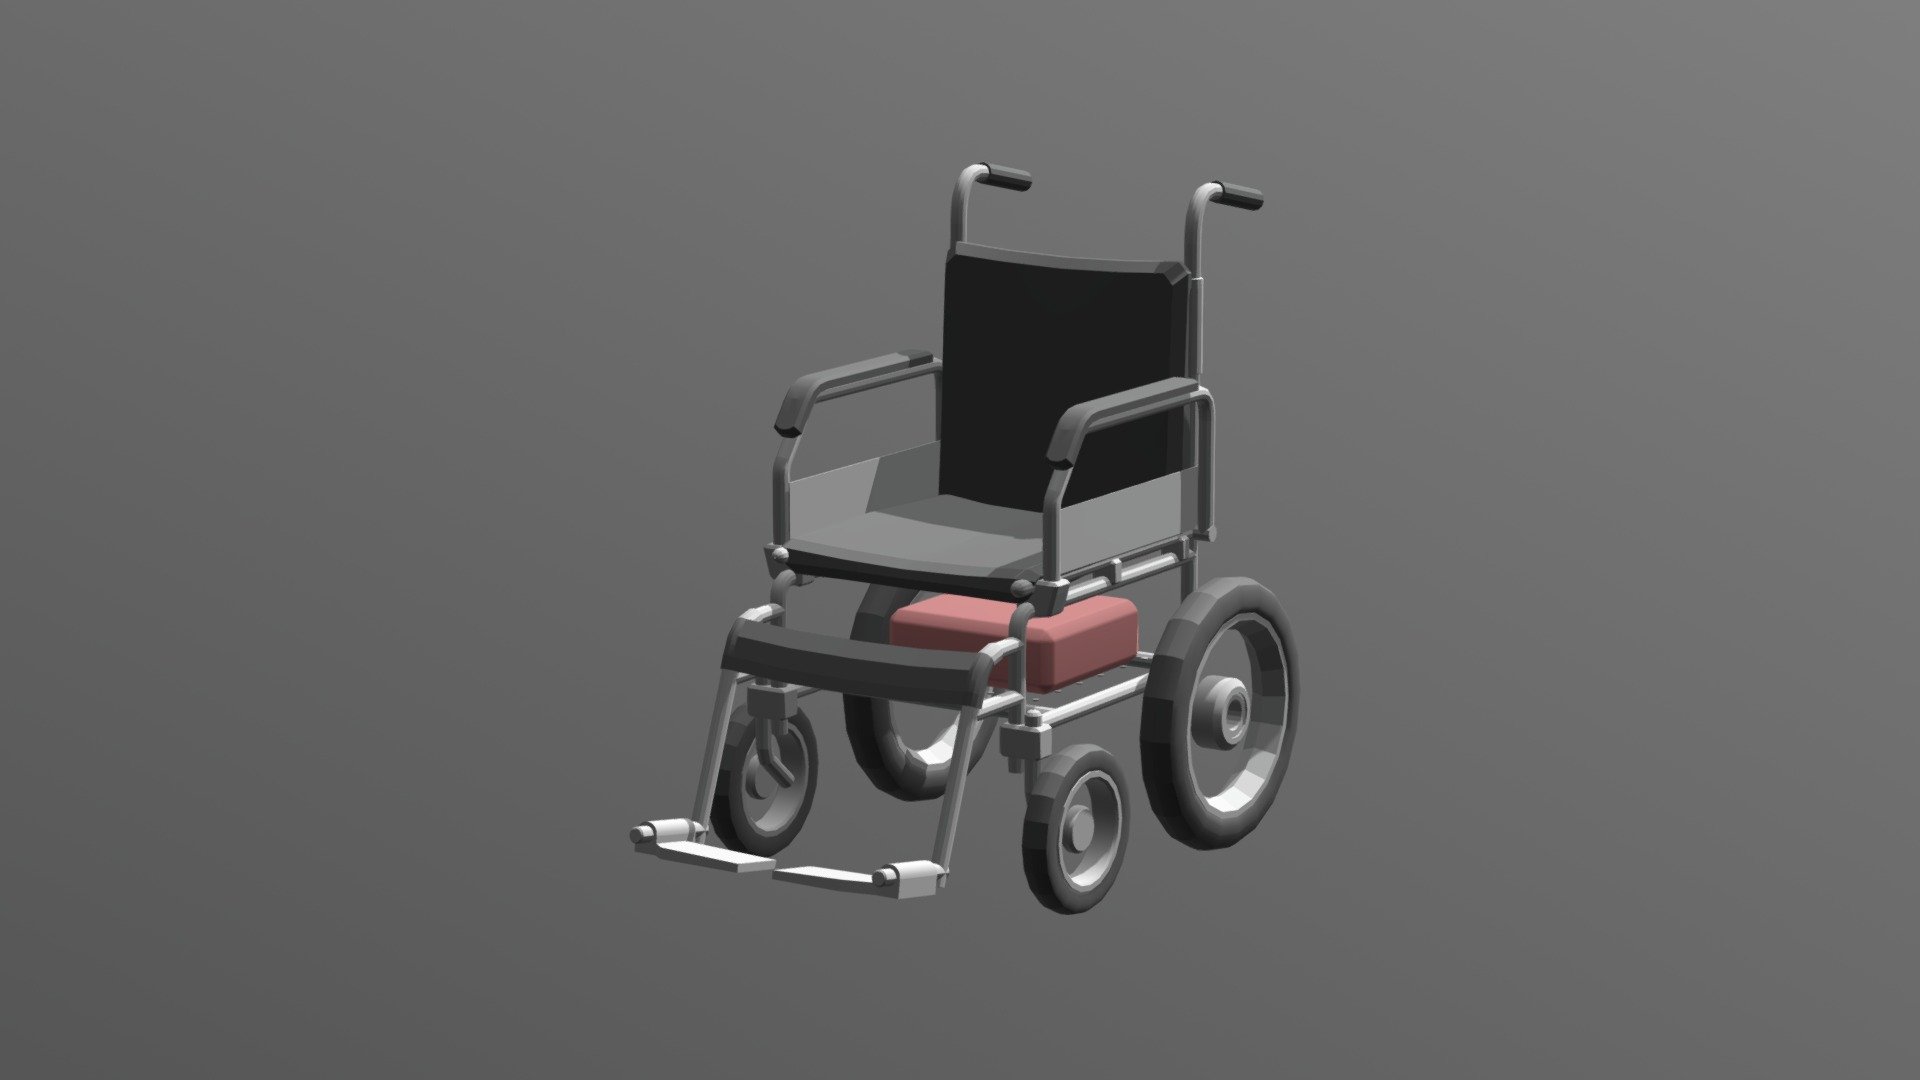 wheelchair - 3D model by popmihaitudor 3d model